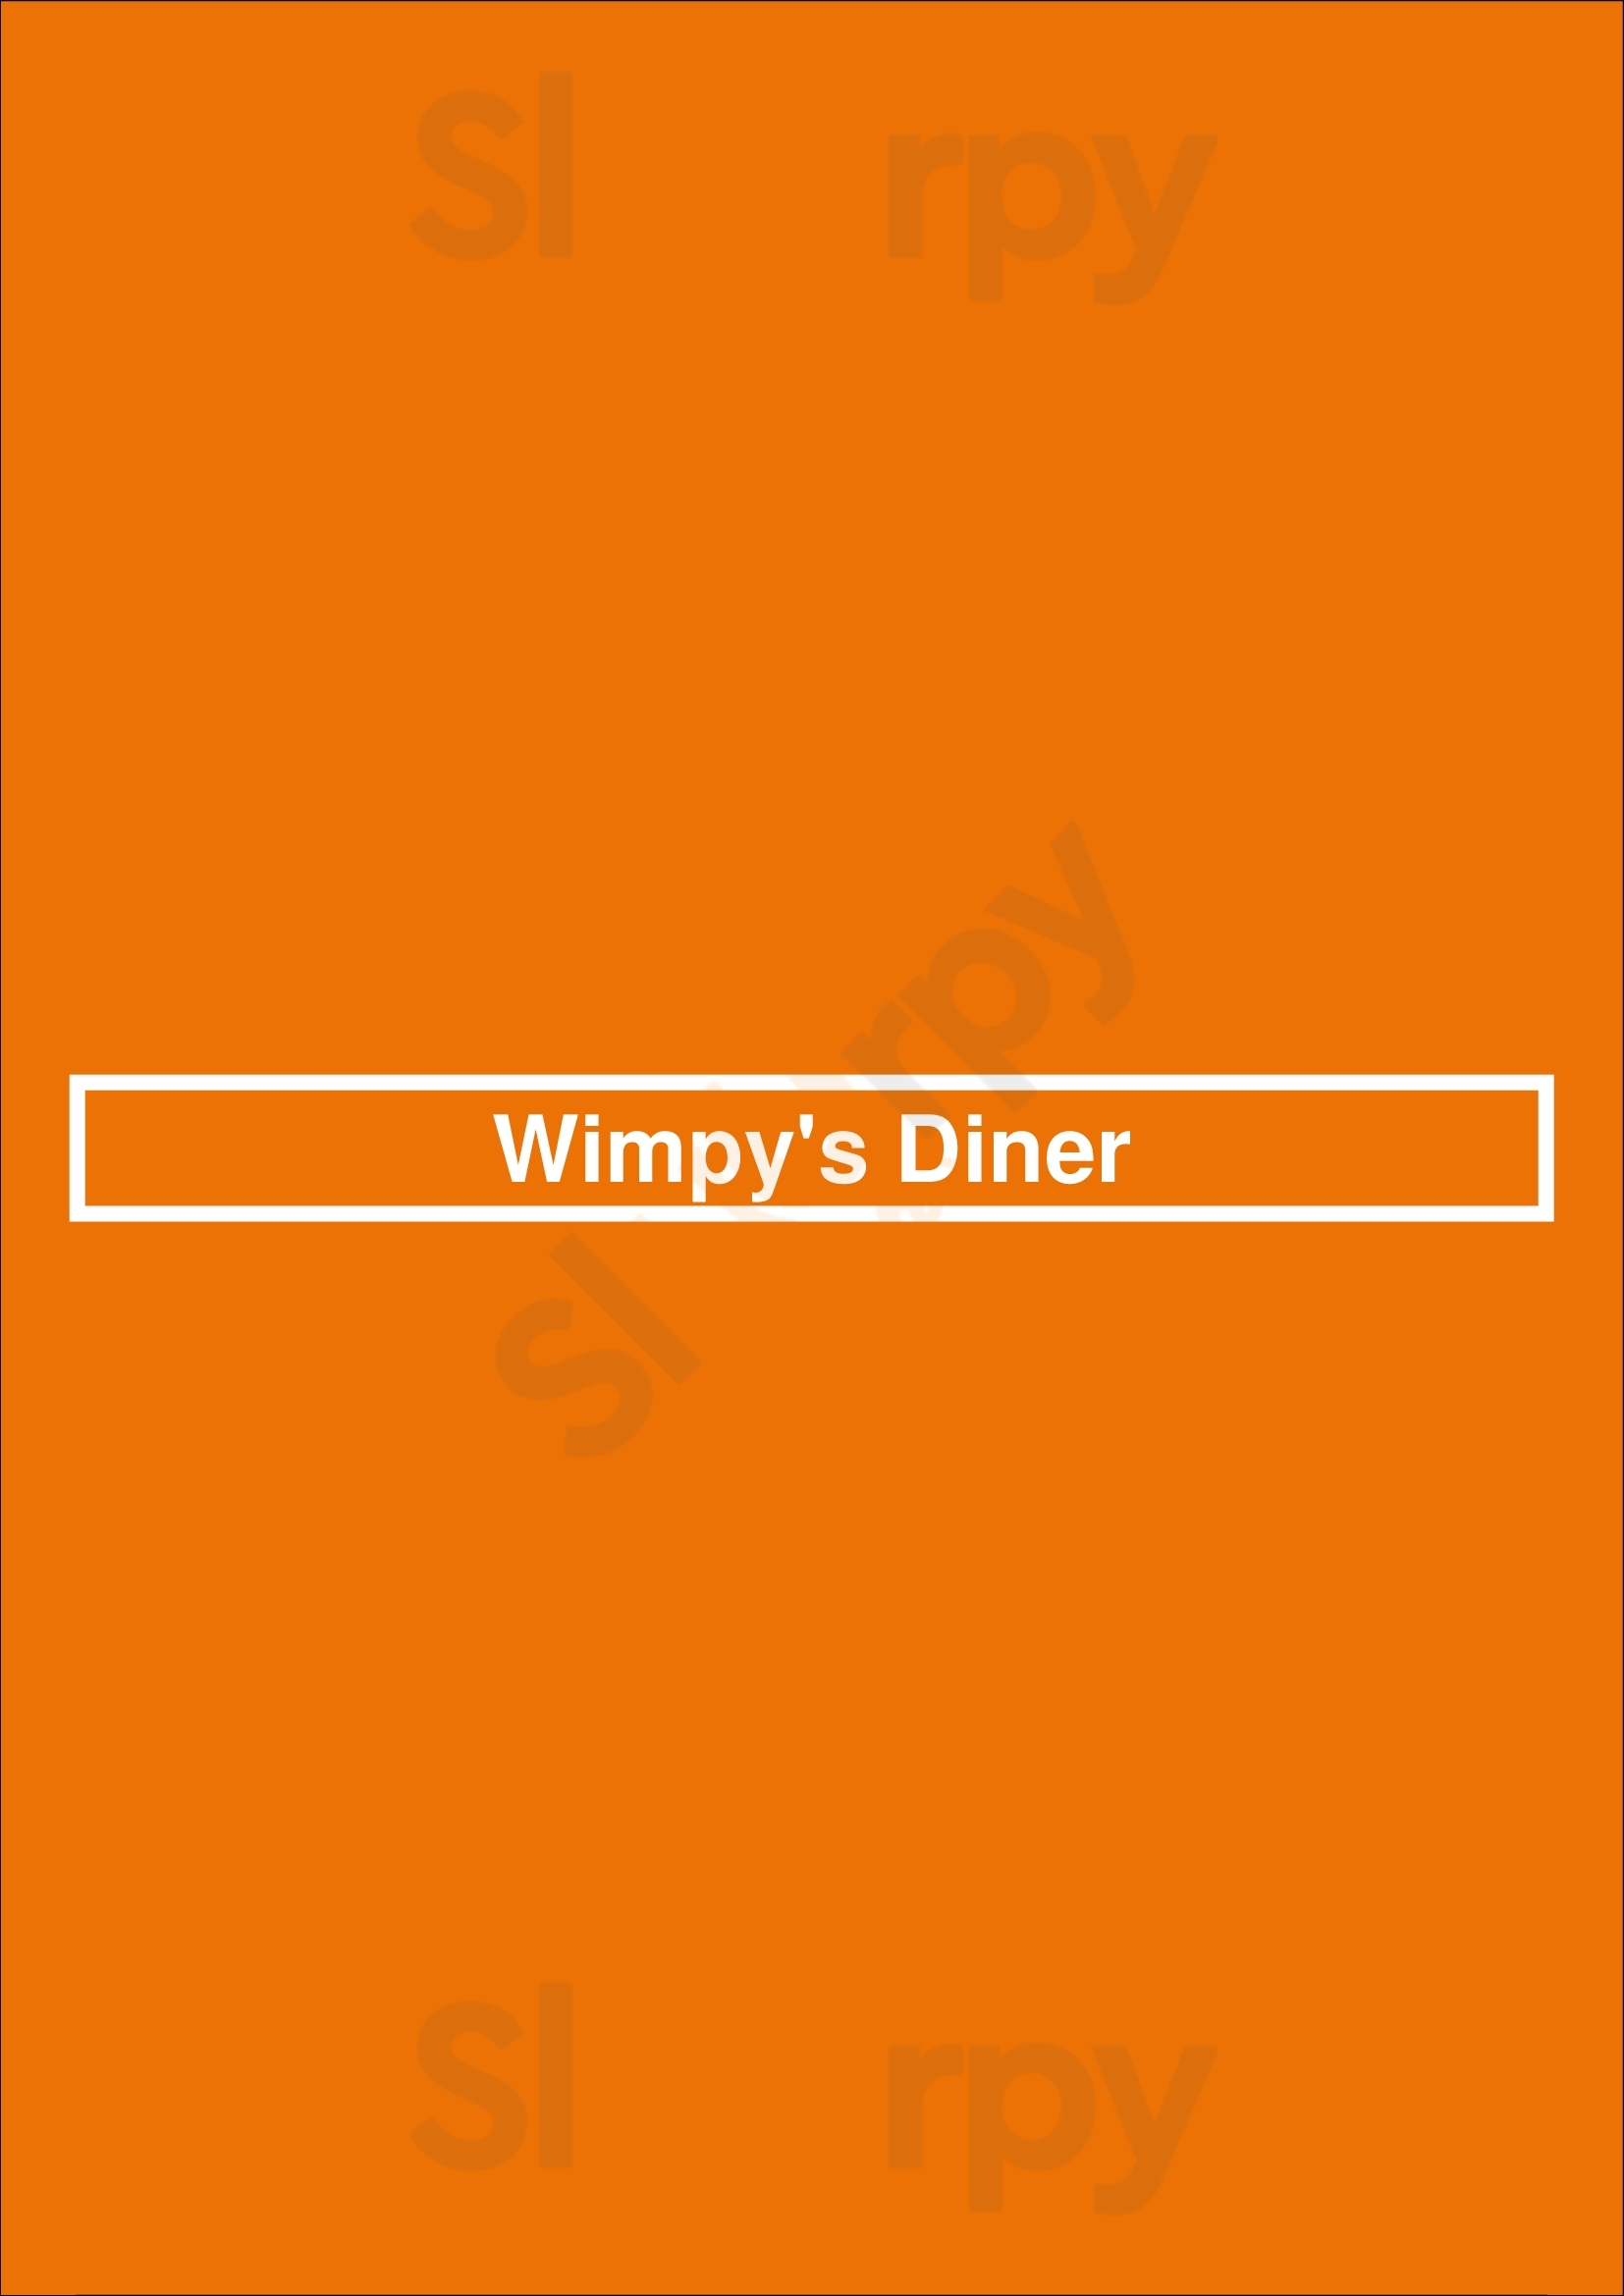 Wimpy's Diner Ajax Menu - 1